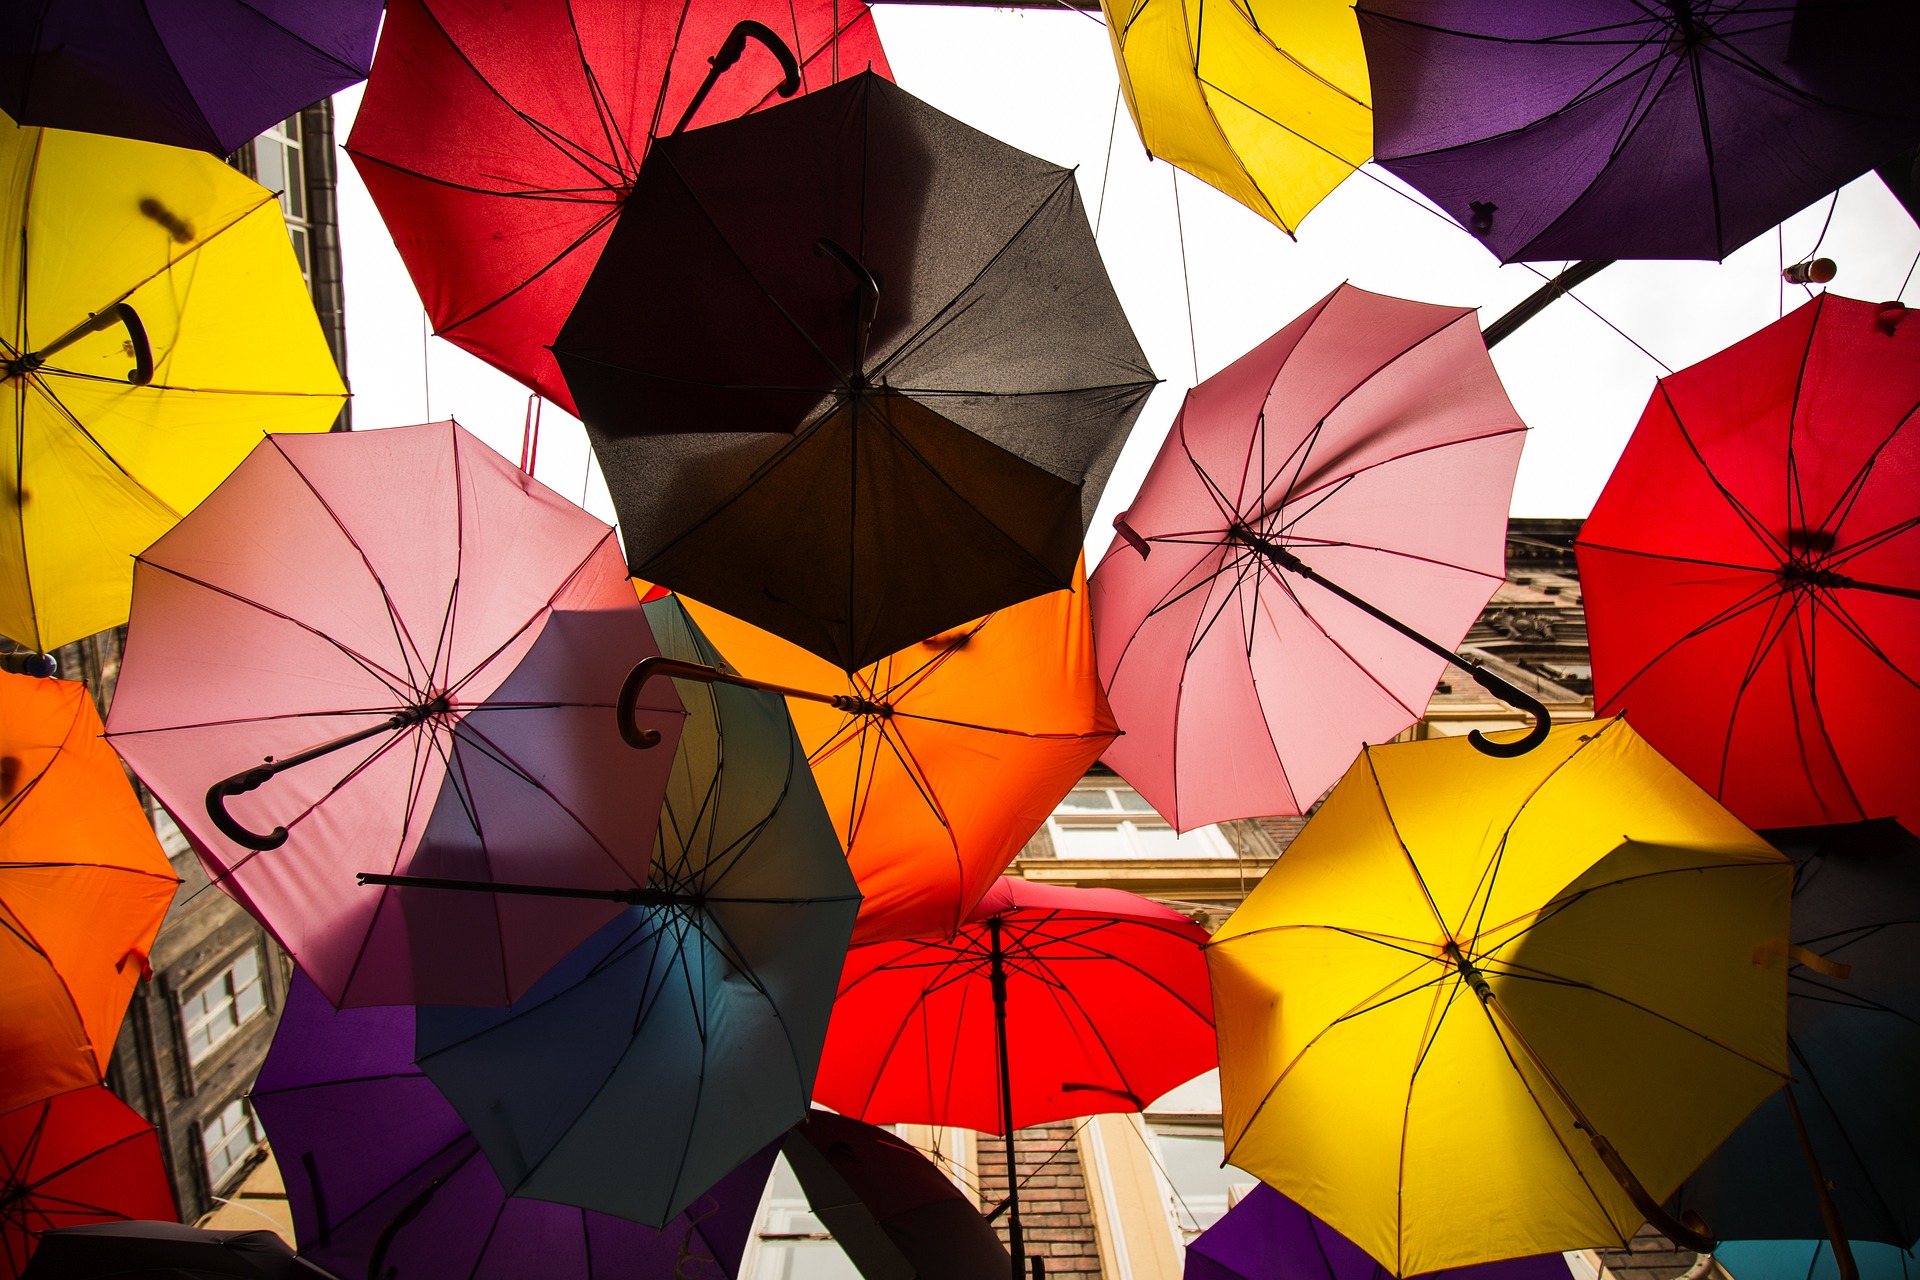 umbrellas in multiple colors